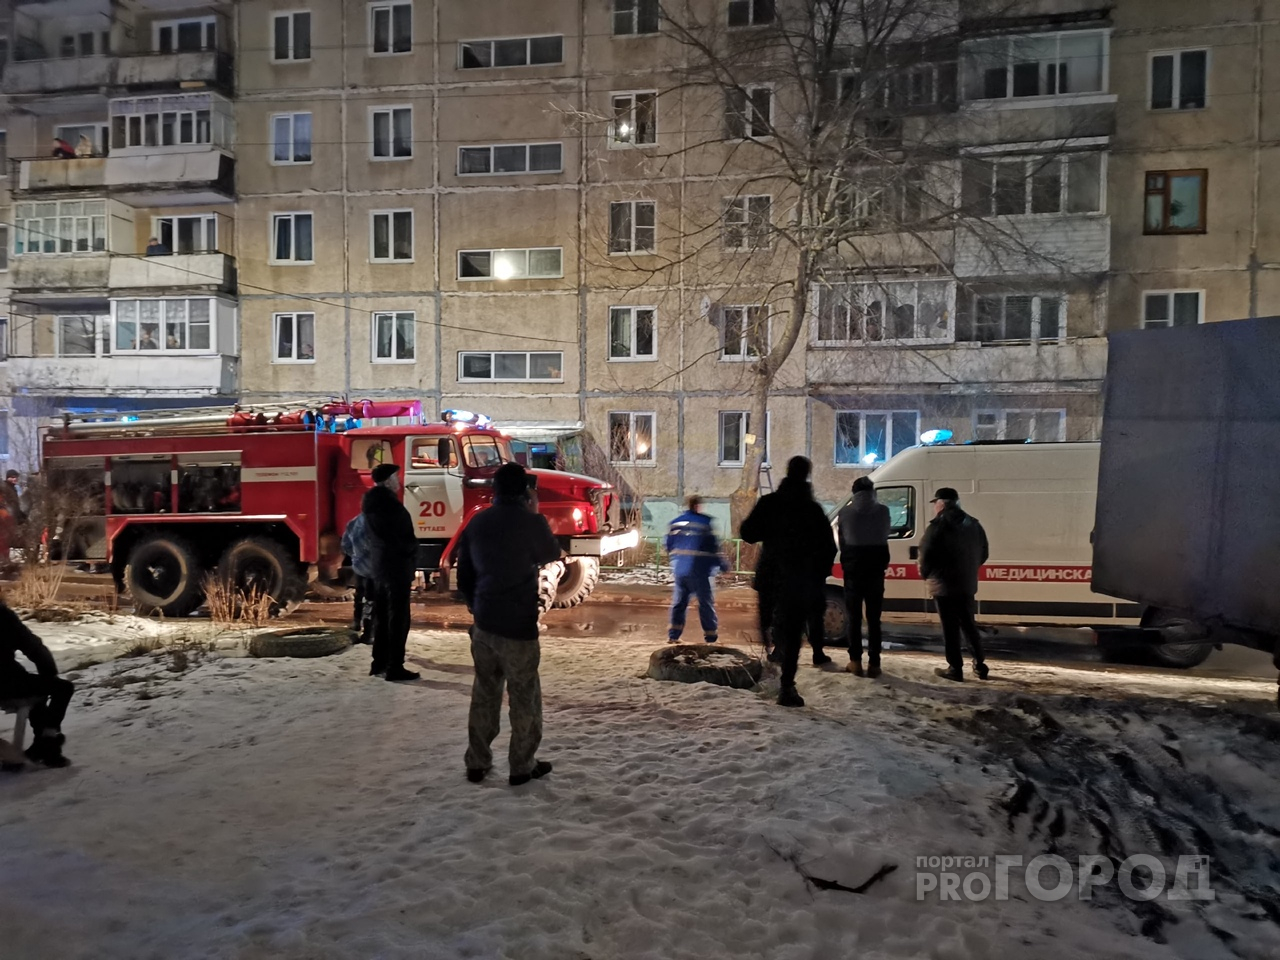 "Голую женщину откачивали 20 минут": подробности смертельного пожара под Ярославлем